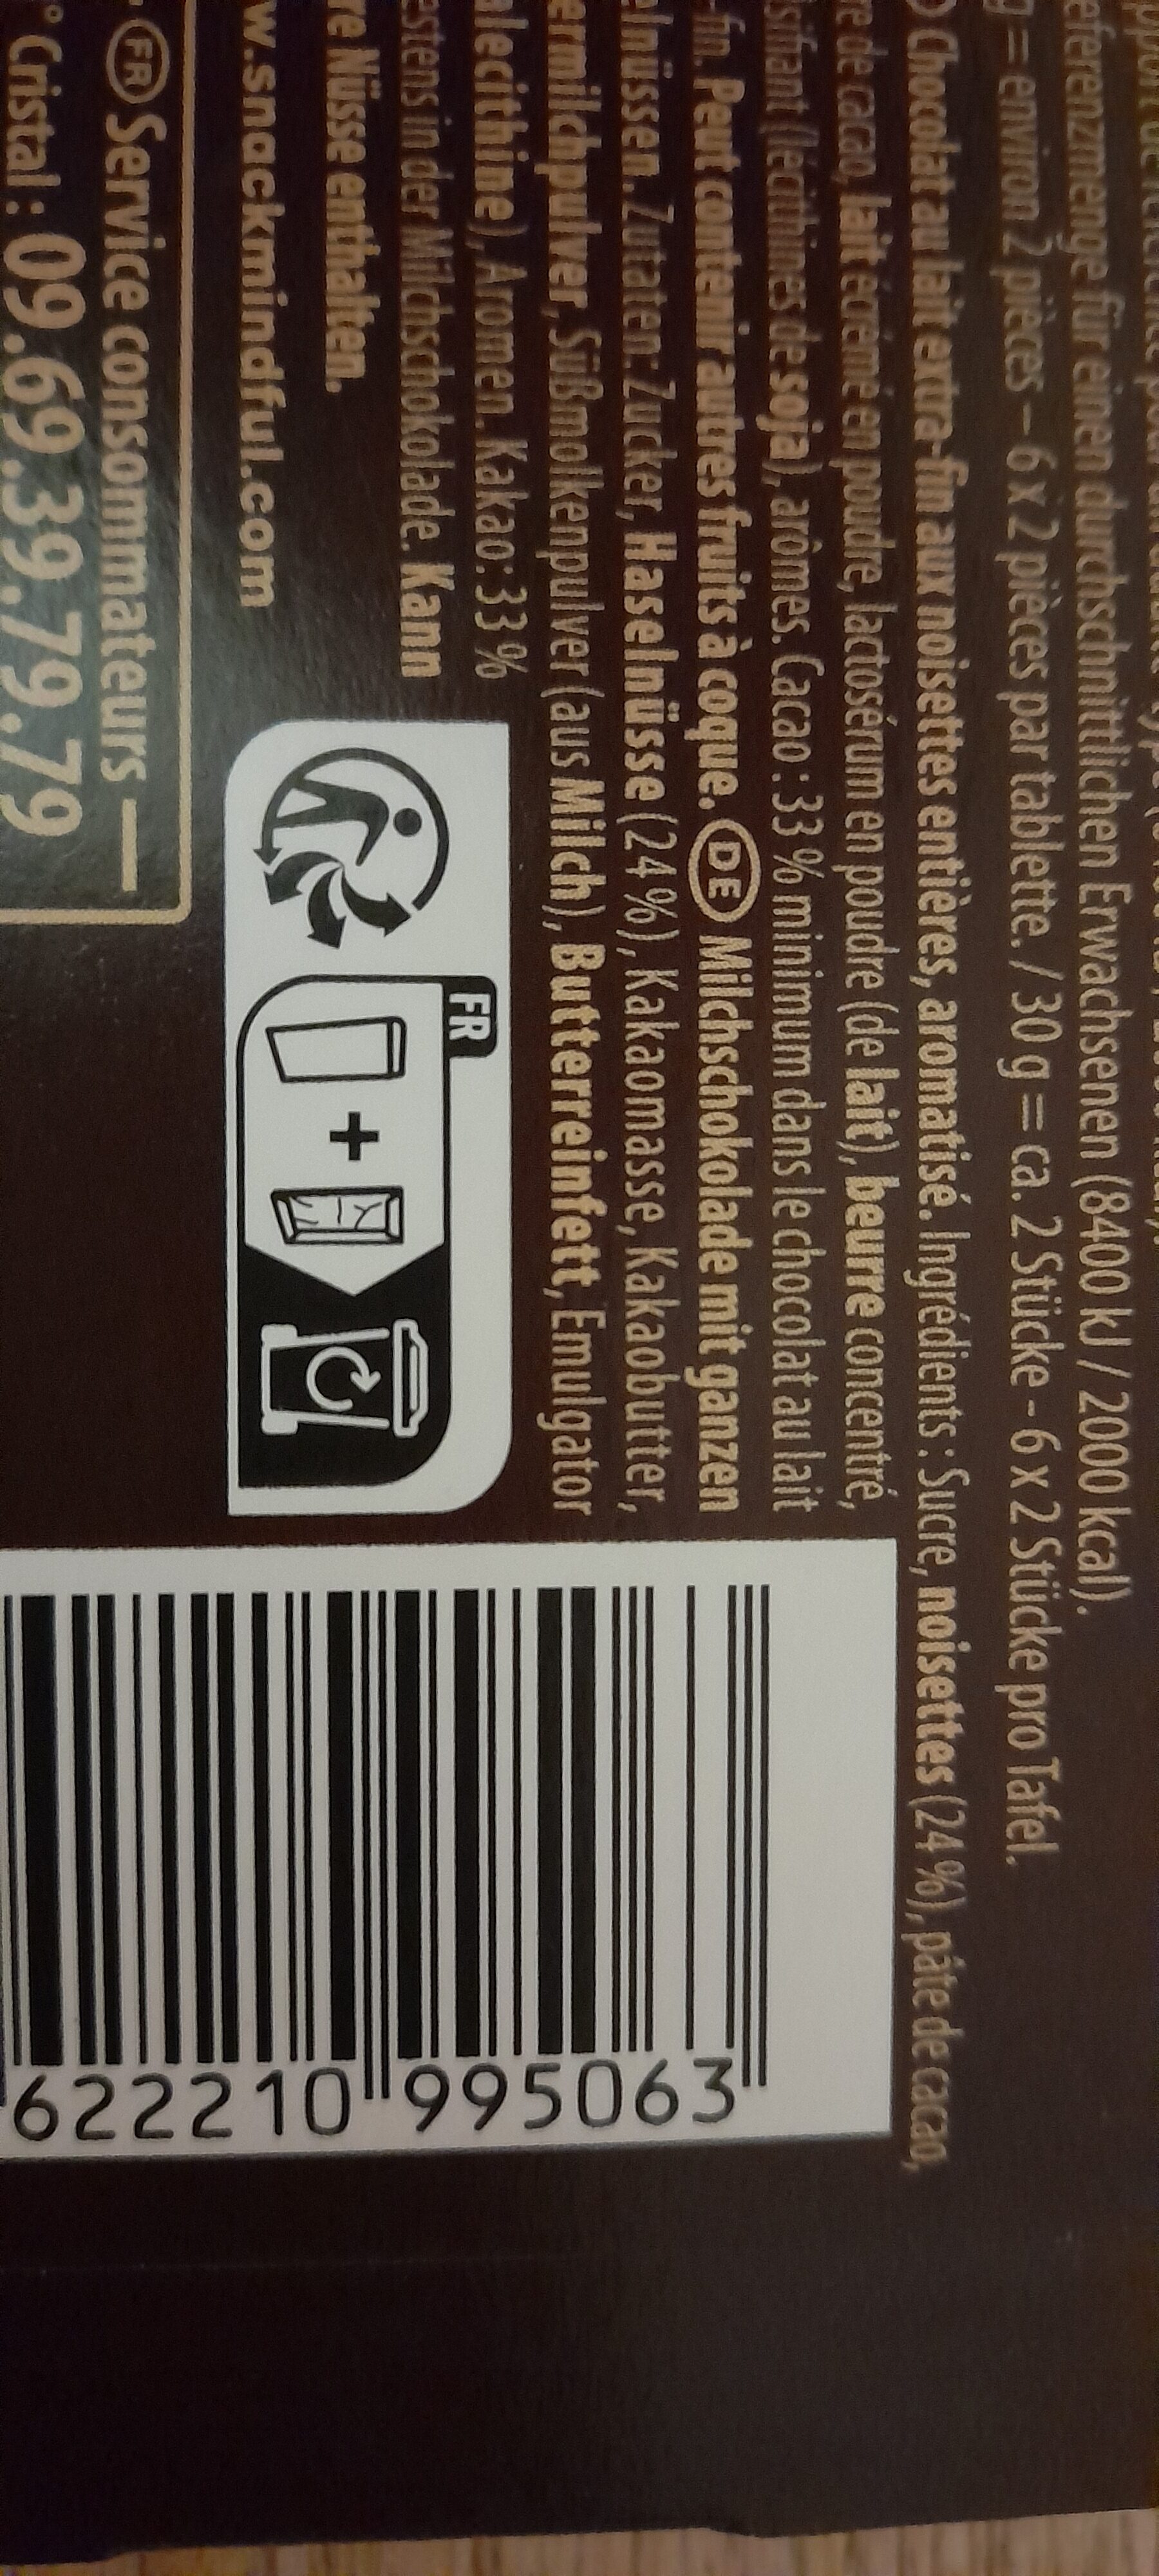 chocolat au lait noisettes entières - Instruction de recyclage et/ou informations d'emballage